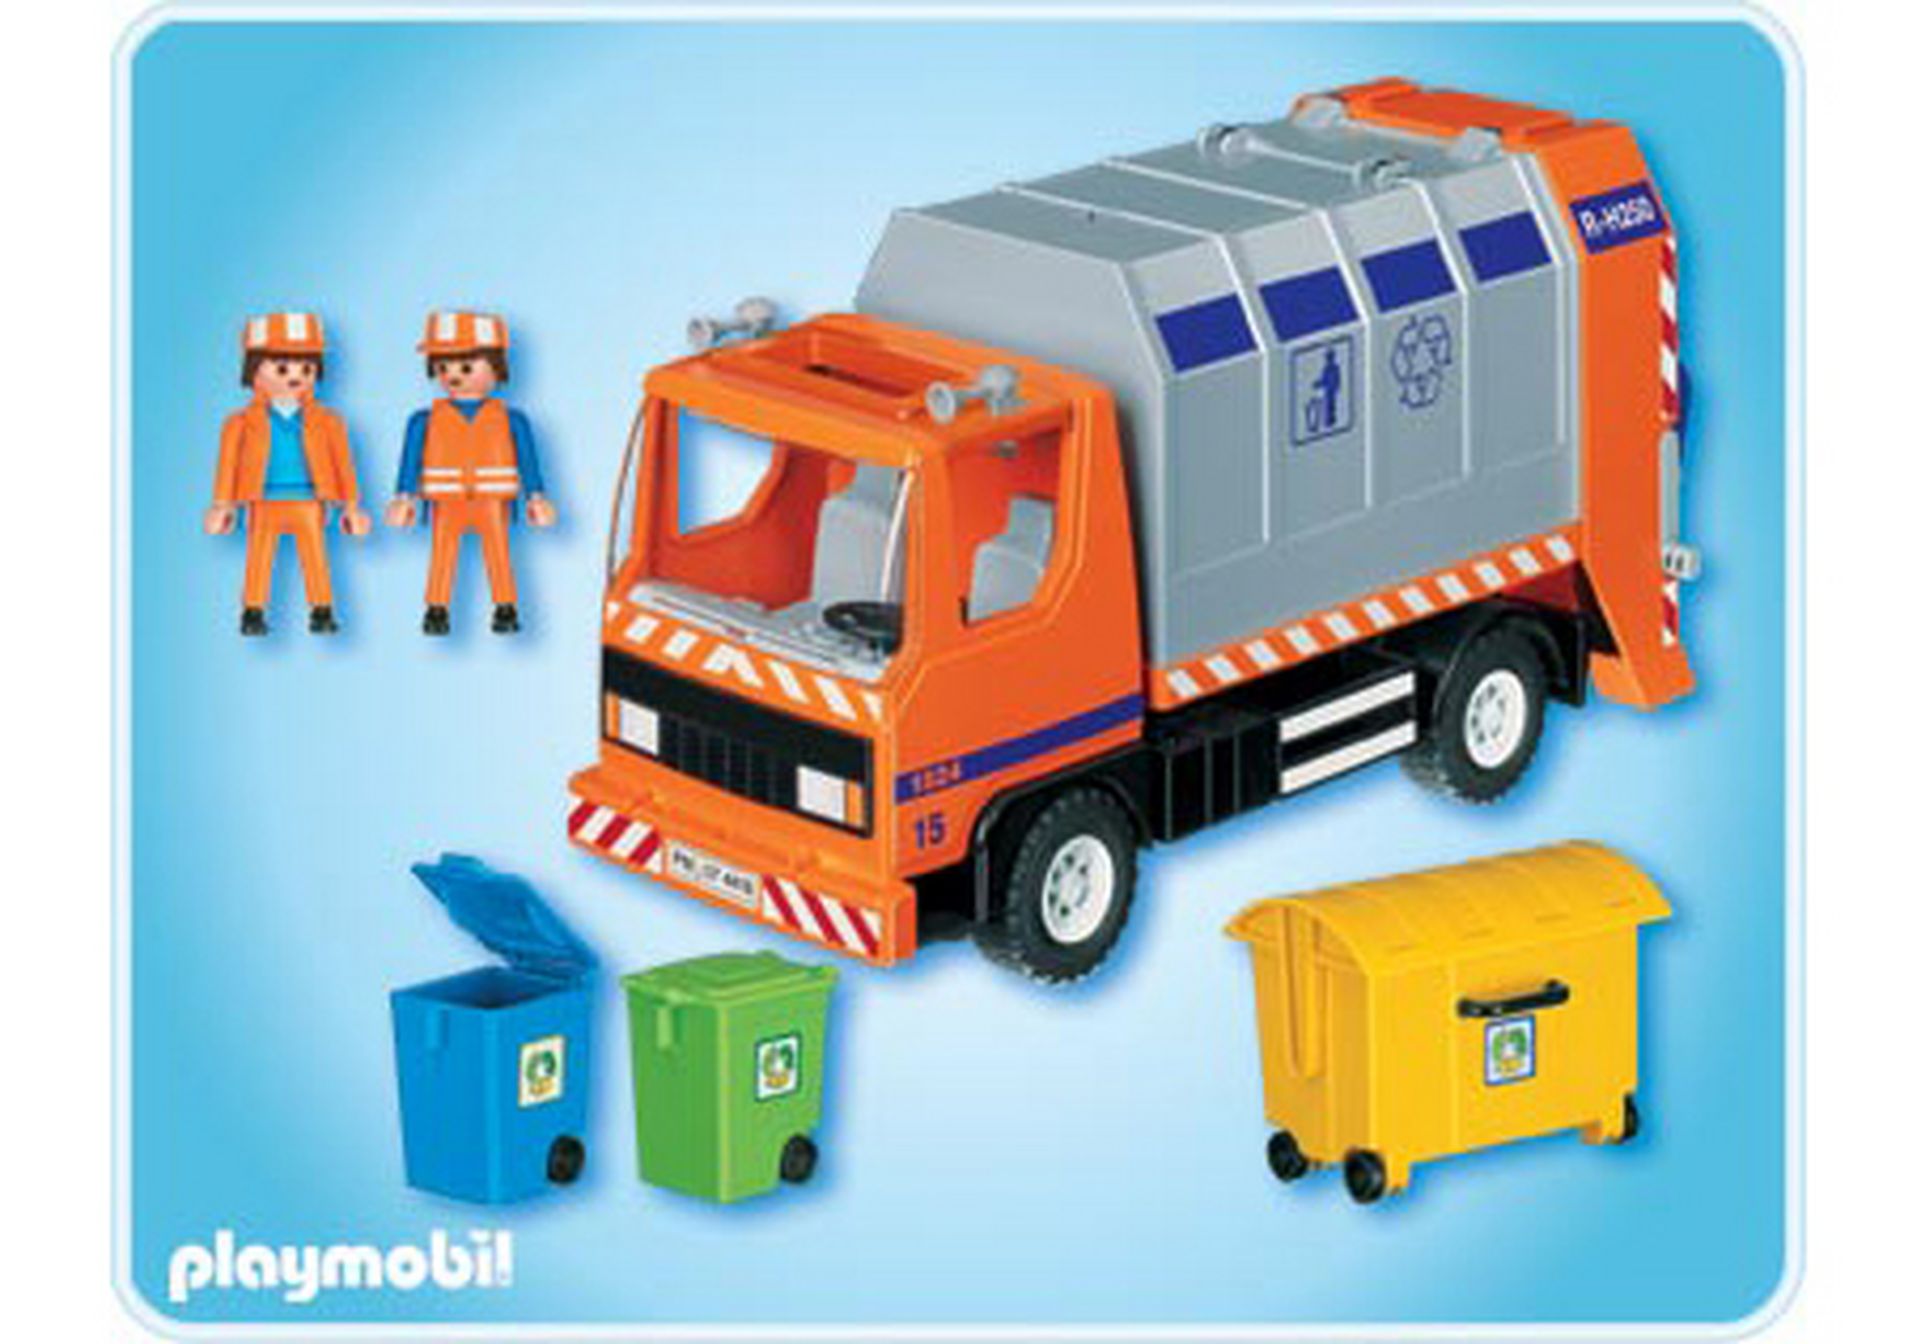 3 blaue Mülltonnen Mülleimer Papiertonnen zu Müllauto 3121 70200 Playmobil 042 